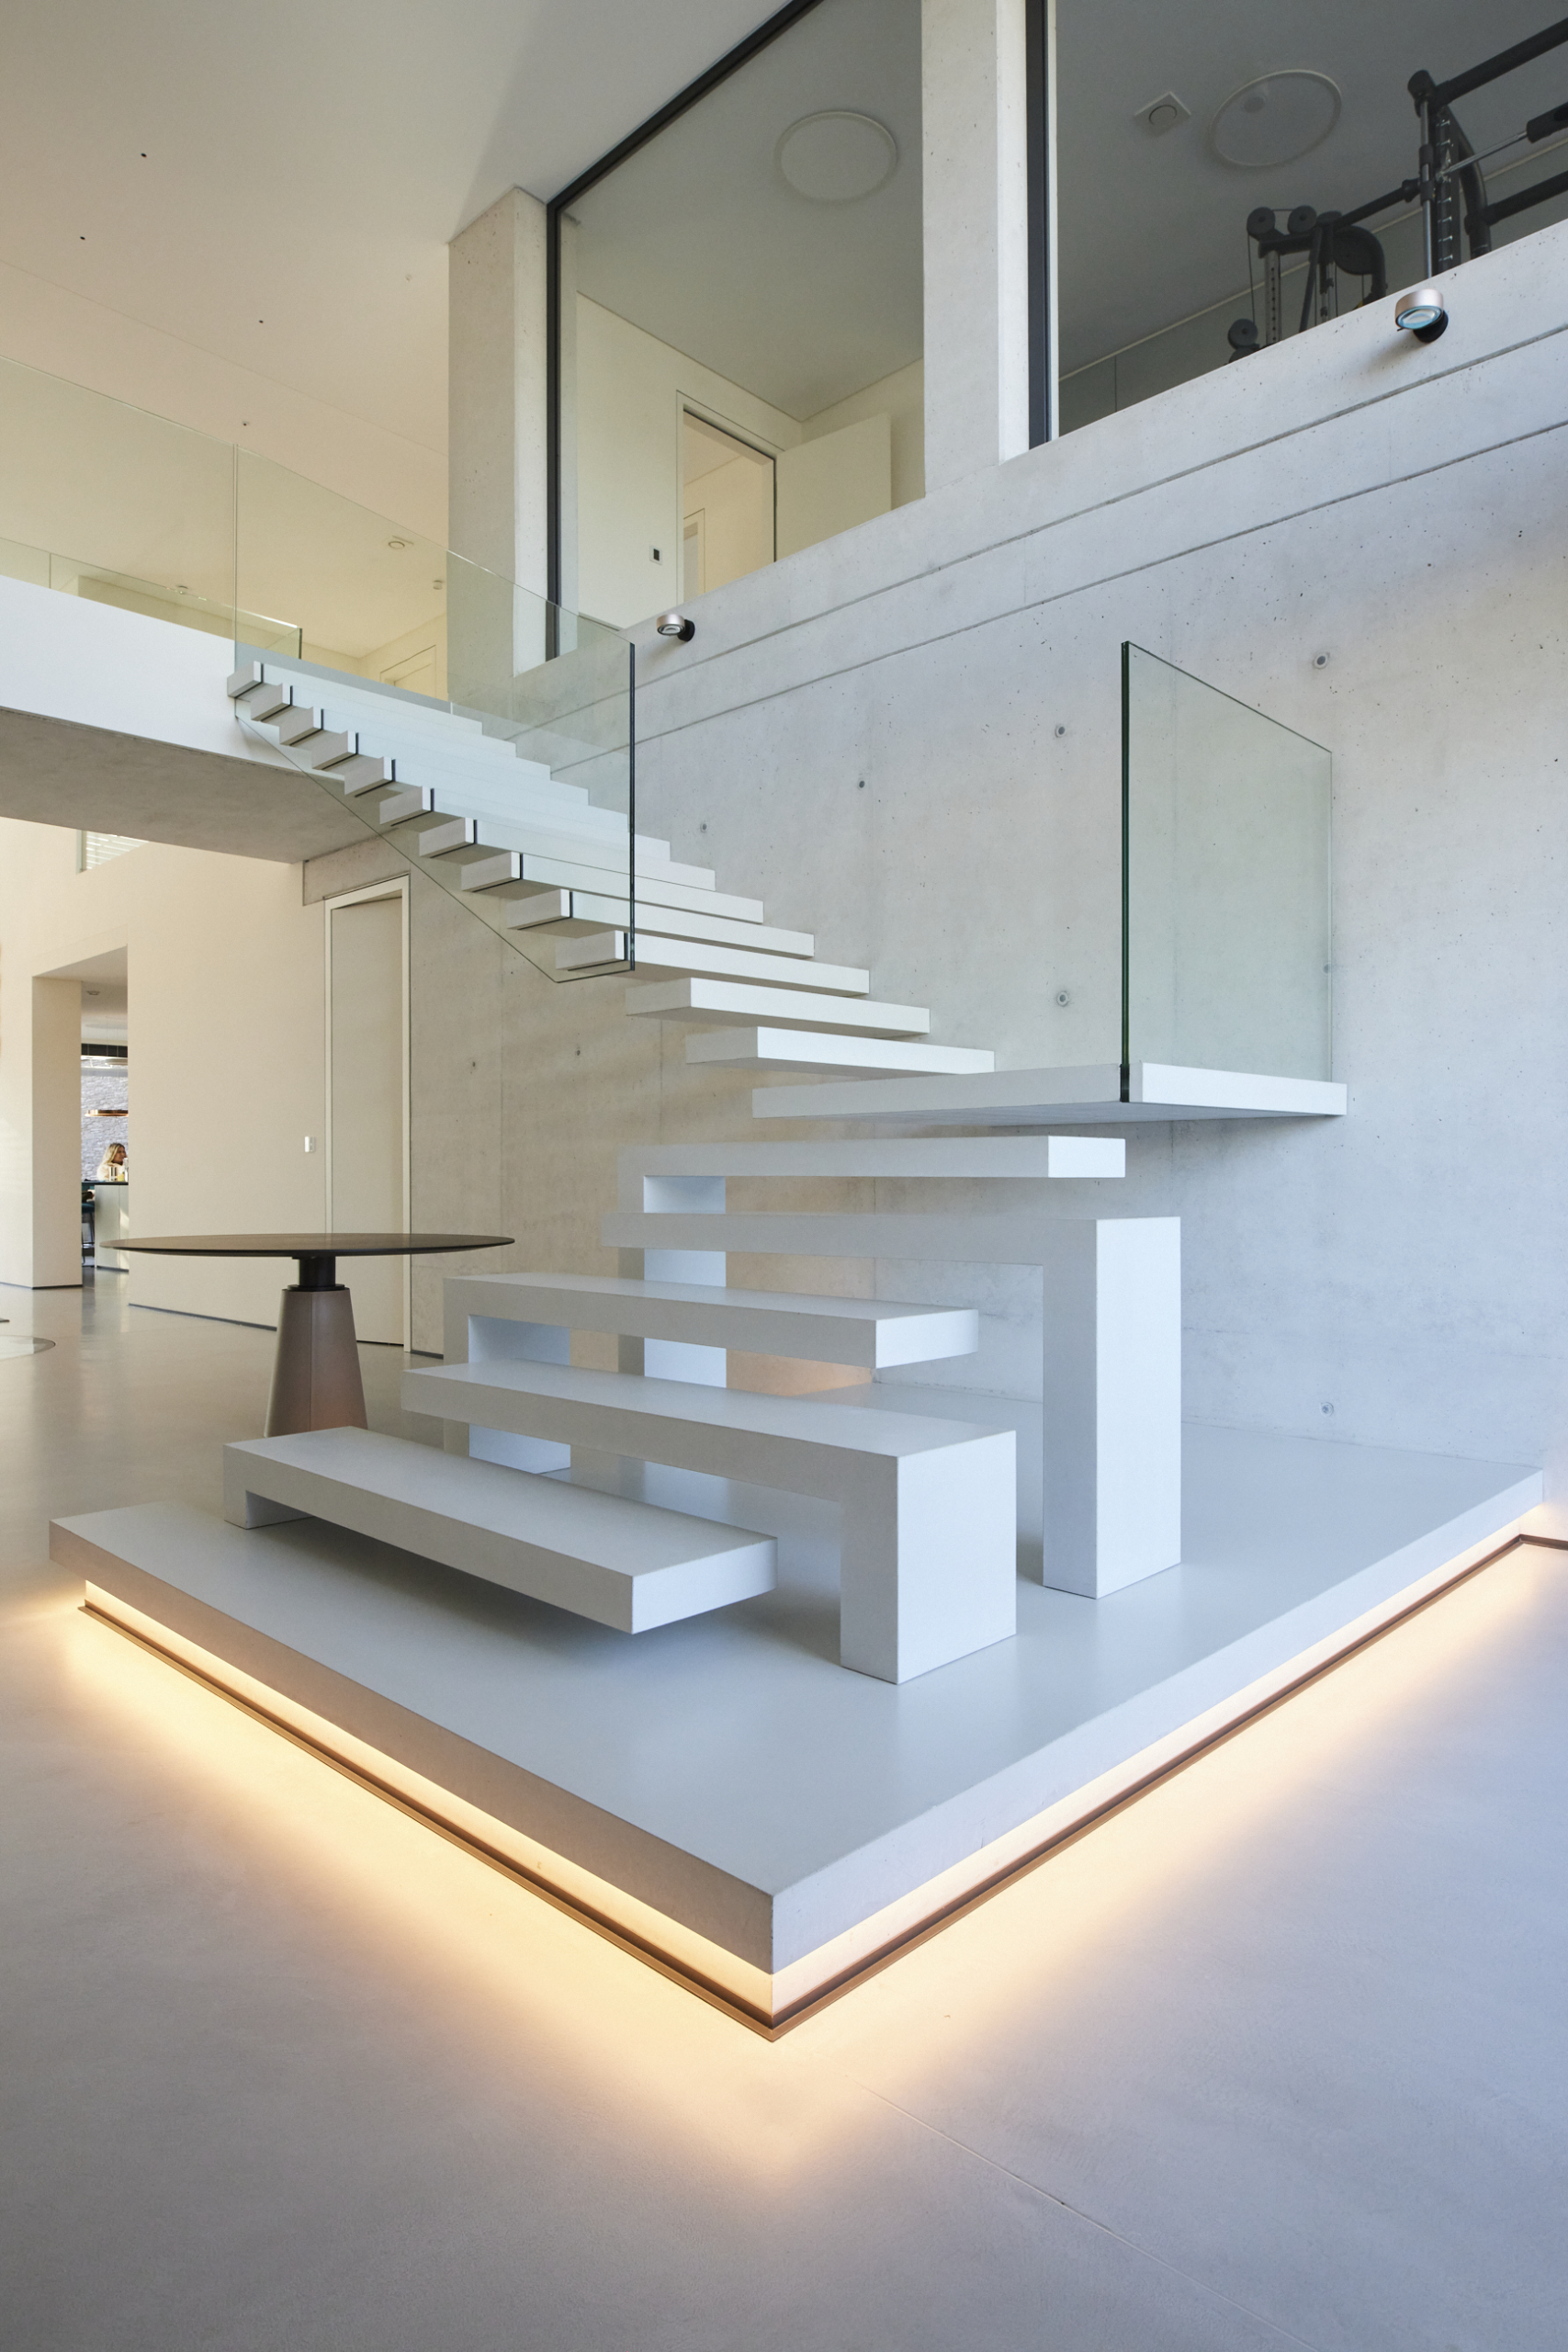 Material: Beton System: Stairs Fix Farbe: natura weiß Wand: Sichtbeton Geländer: Glasscheibe Sonstiges: LED-Beleuchtung, Podest